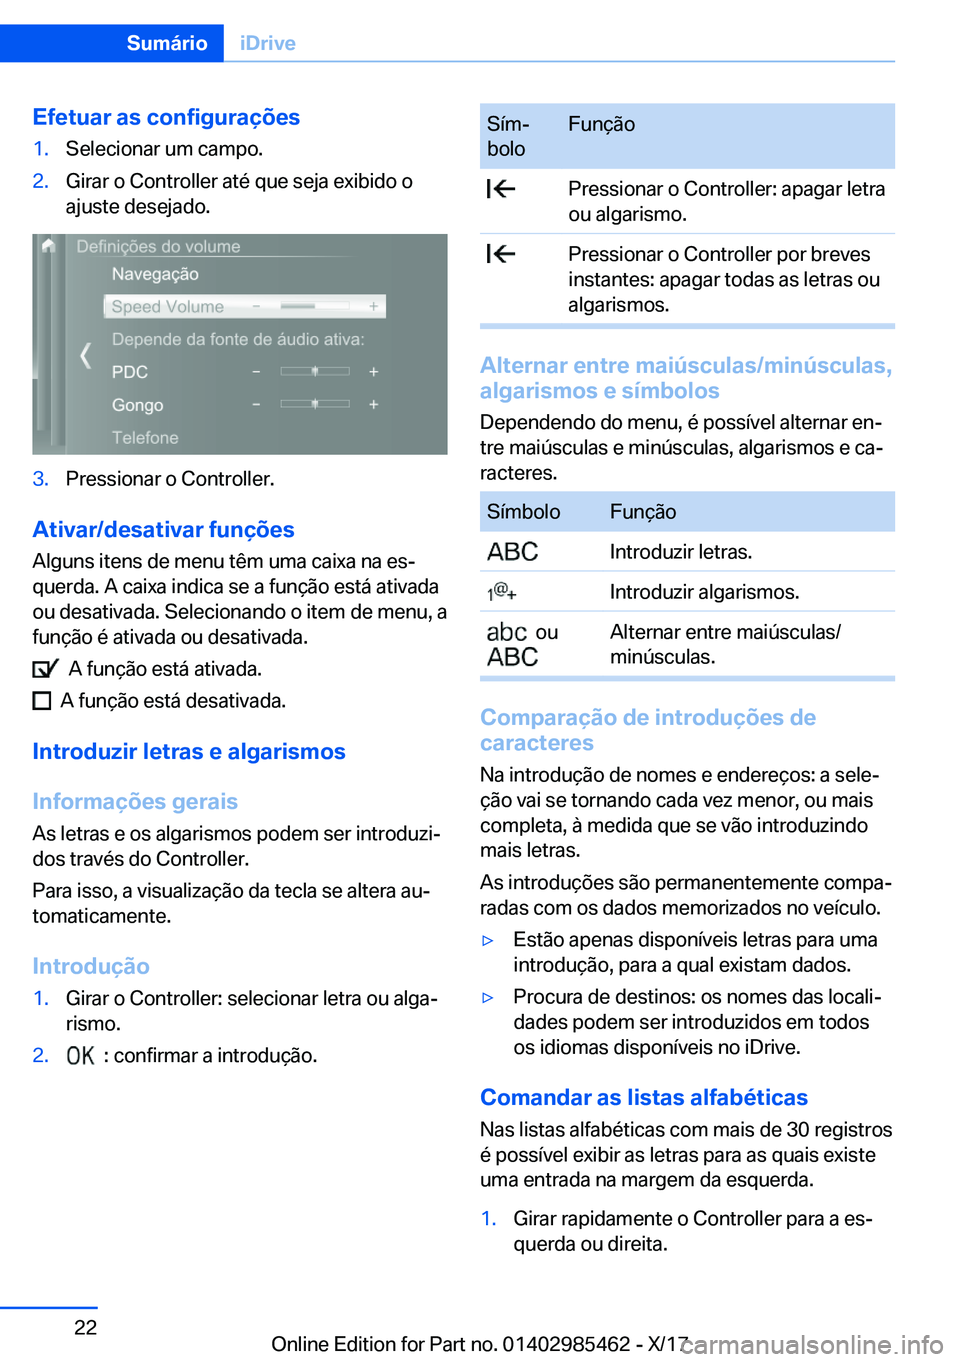 BMW X1 2018  Manual do condutor (in Portuguese) �E�f�e�t�u�a�r��a�s��c�o�n�f�i�g�u�r�a�